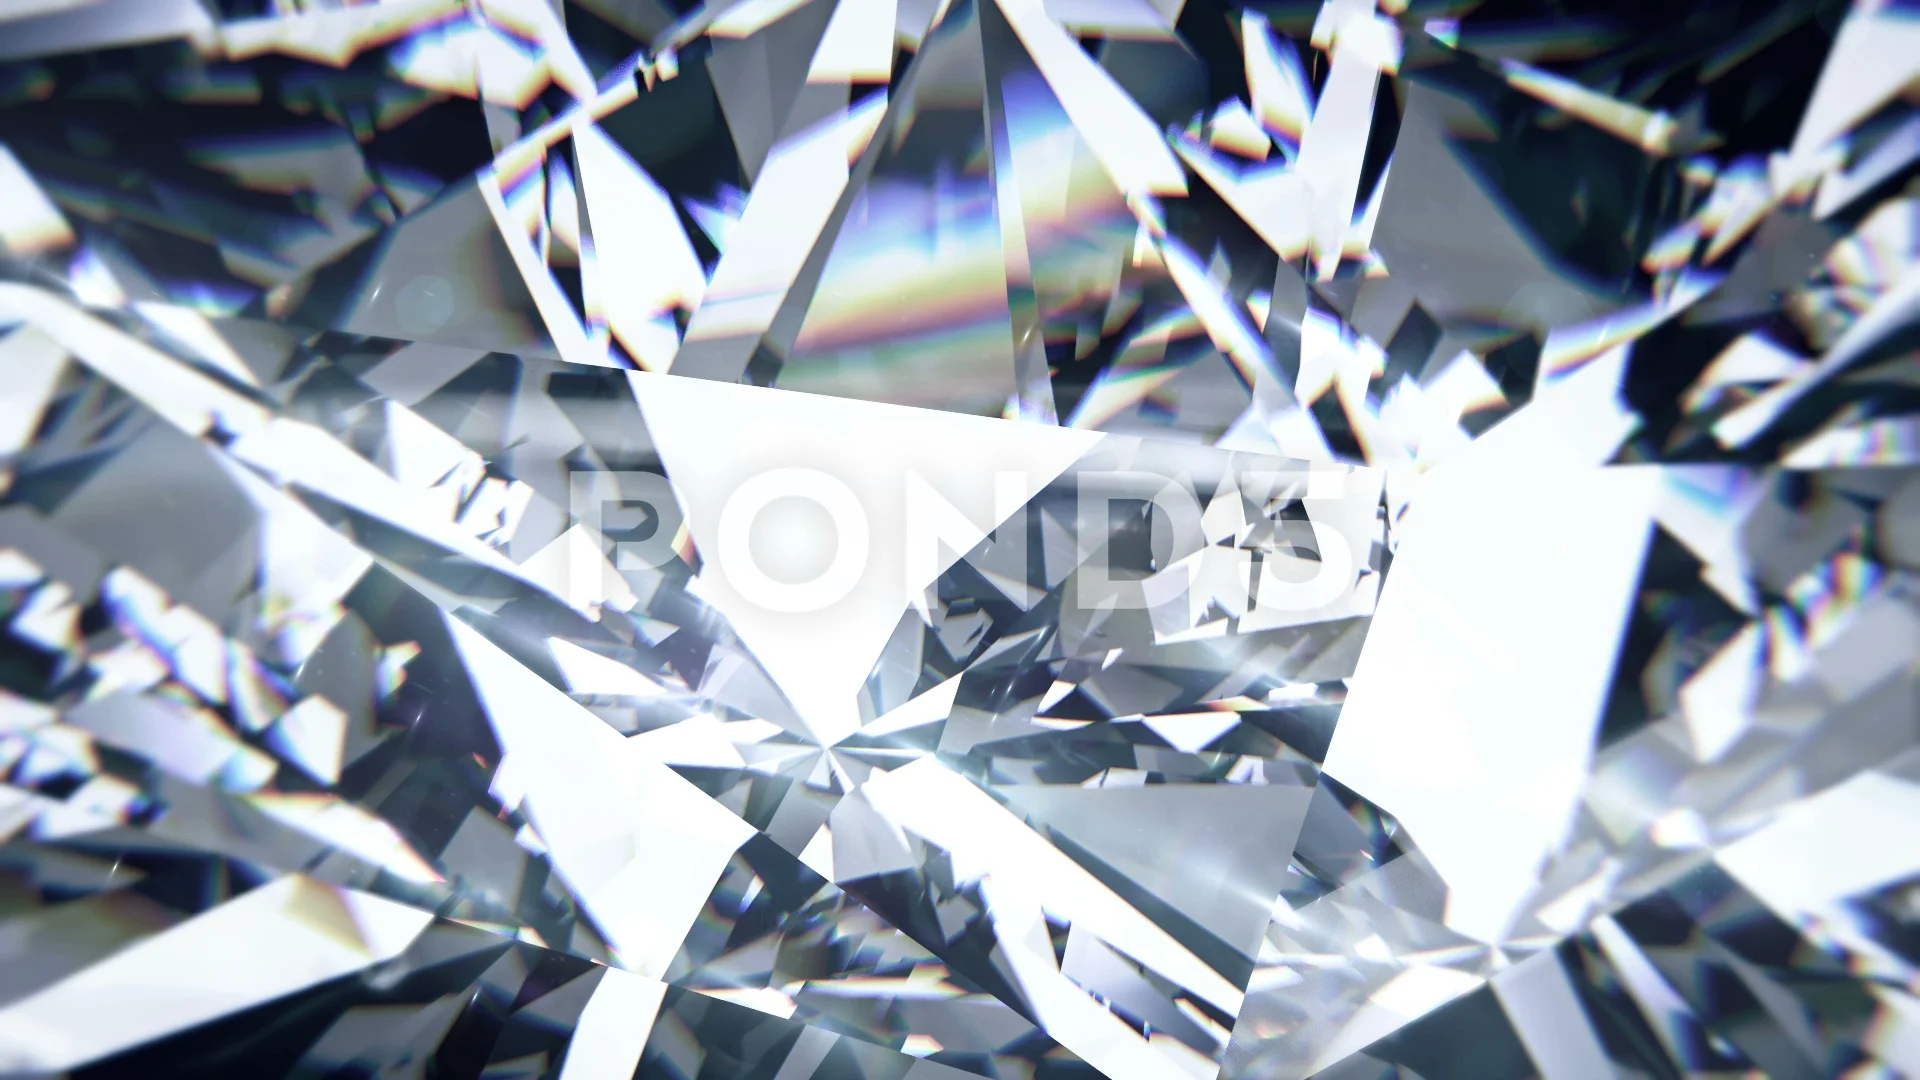 White Diamond Images  Free Download on Freepik